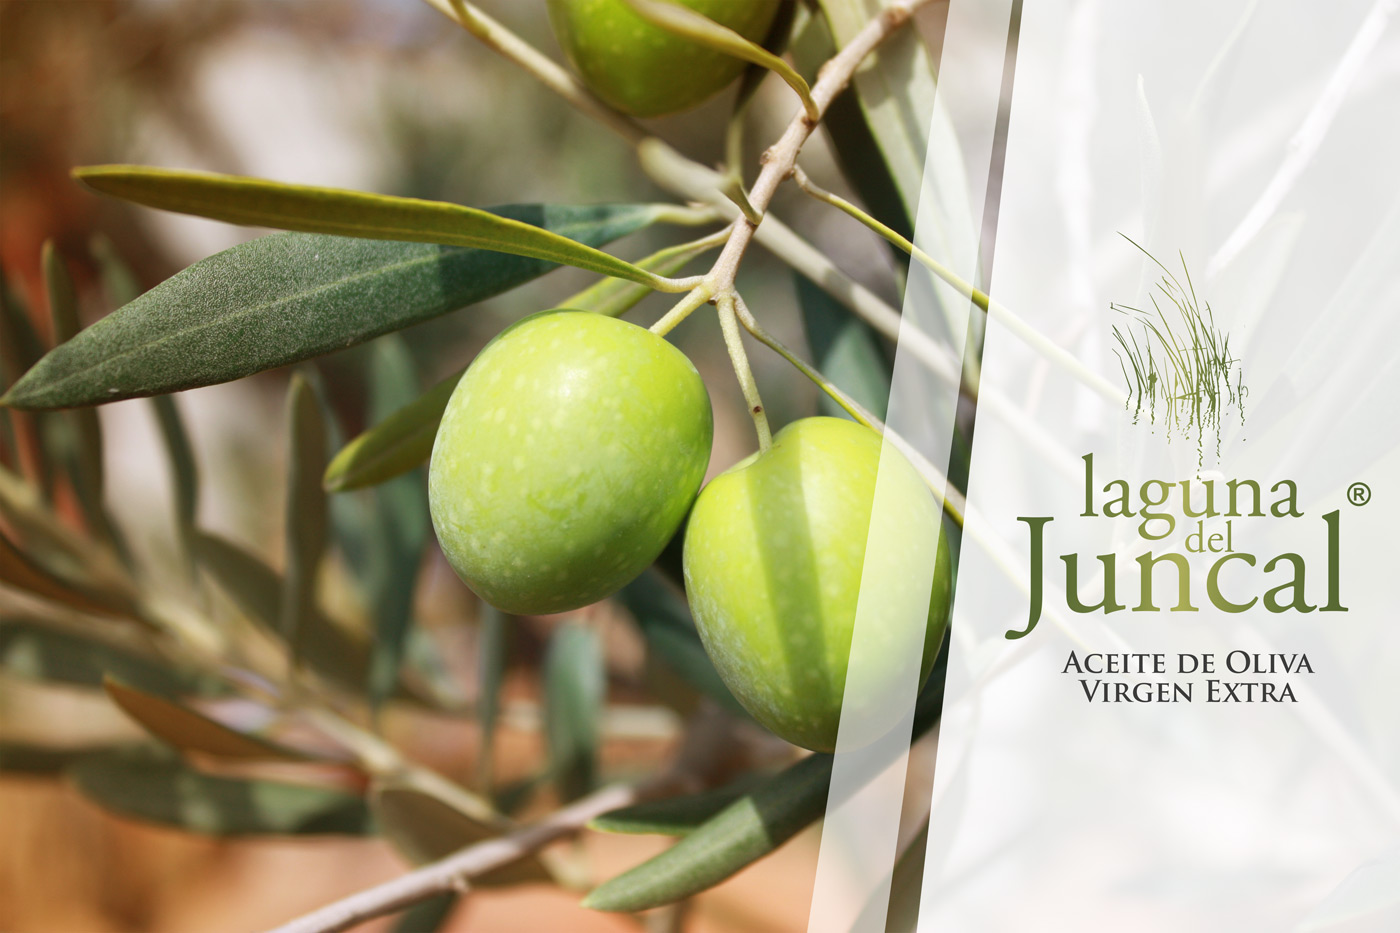 Diseño gráfico y creativo de etiquetas de aceite de oliva virgen extra para la marca en Argentina - LAGUNA DEL JUNCAL